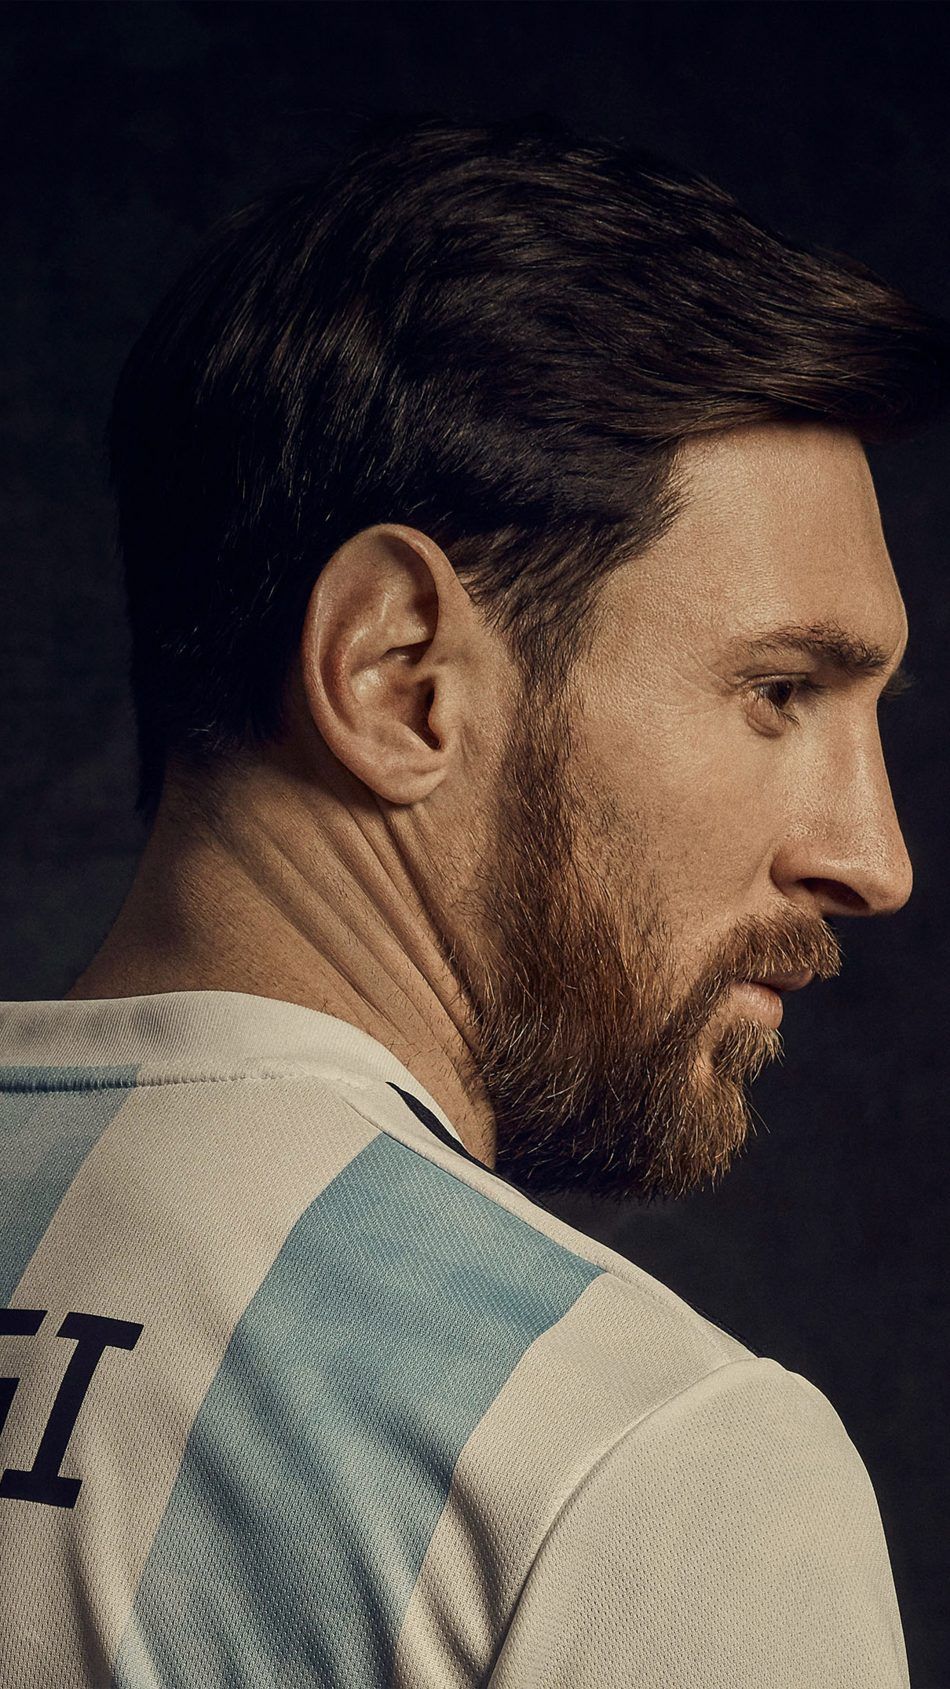 Lire la suite à propos de l’article Lionel messi sur RS Pinterest: Lionel Messi 2019 4K Ultra HD Mobile Wallpaper